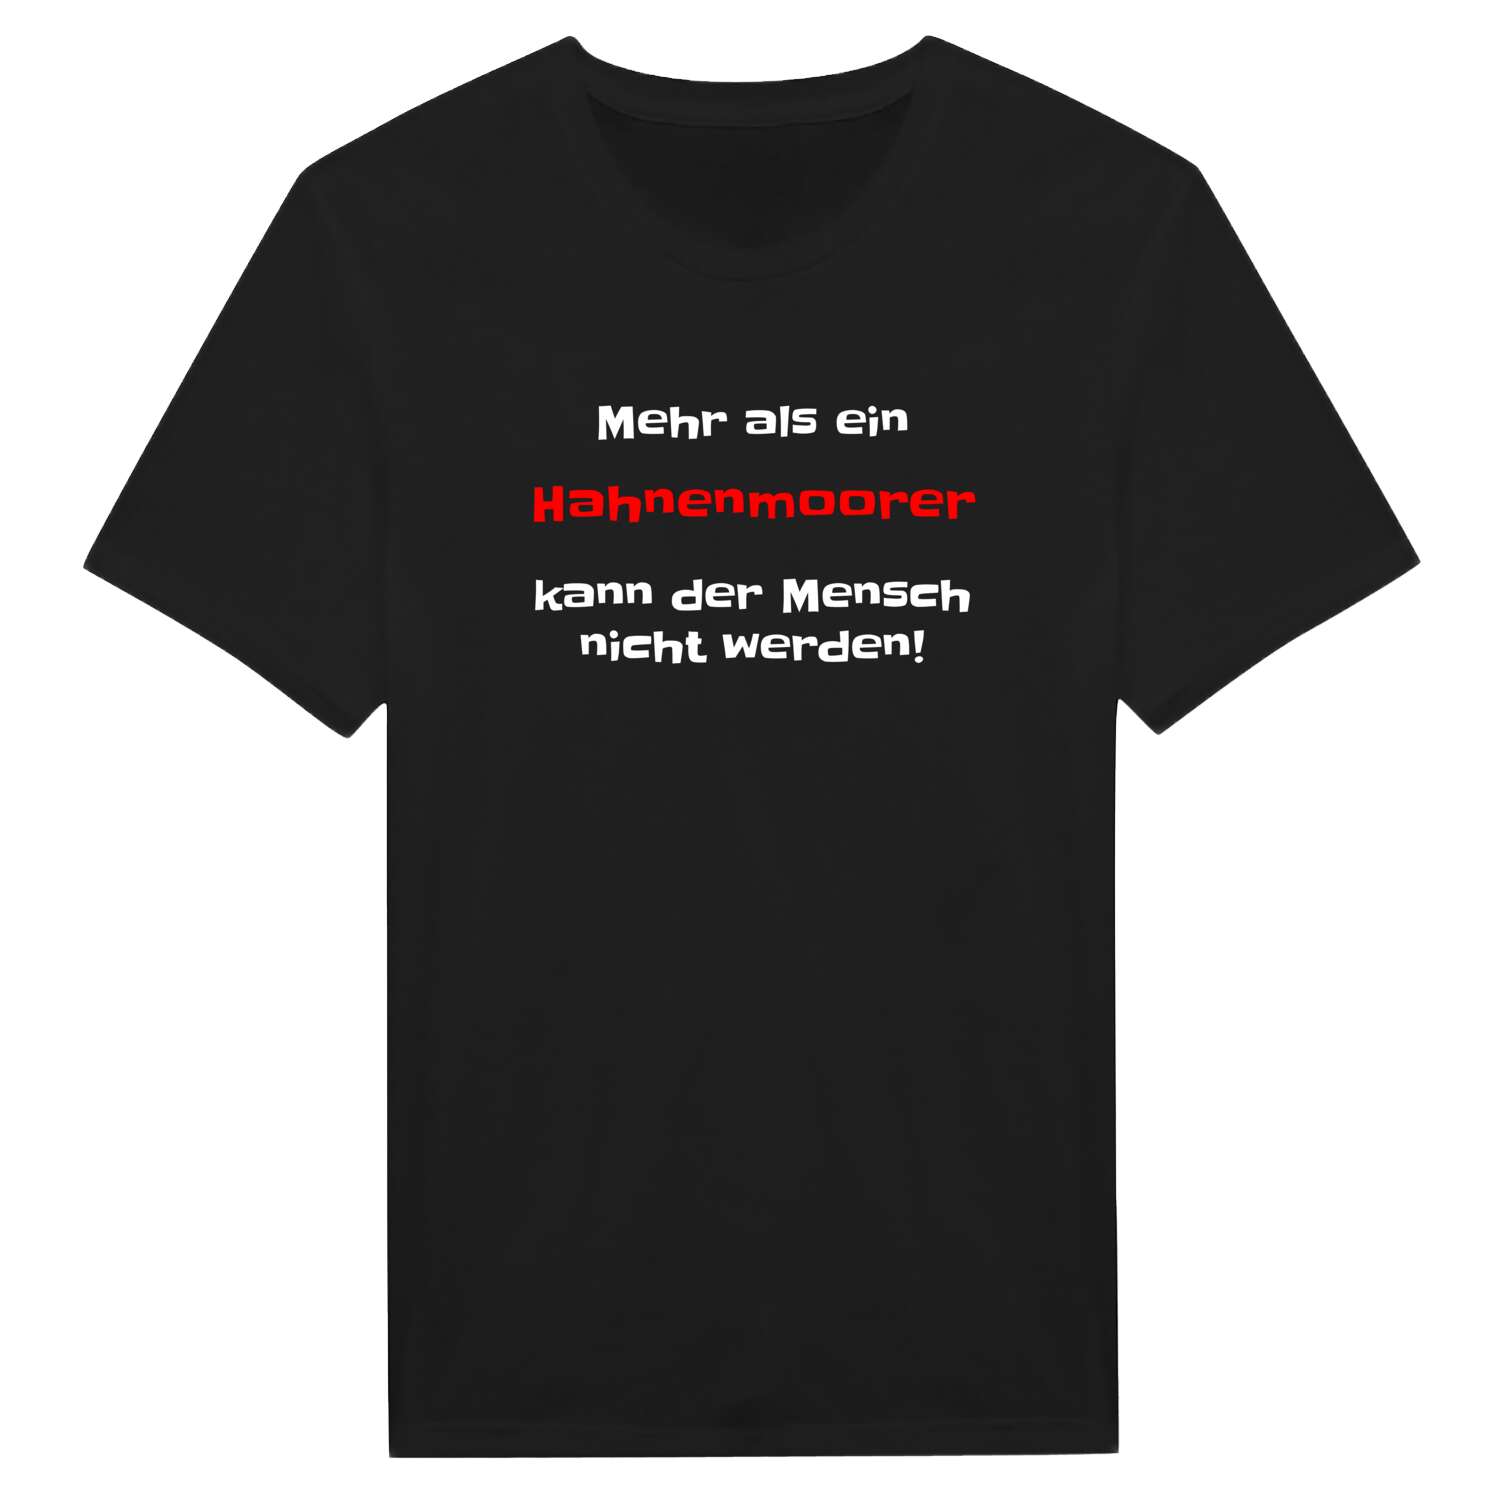 Hahnenmoor T-Shirt »Mehr als ein«